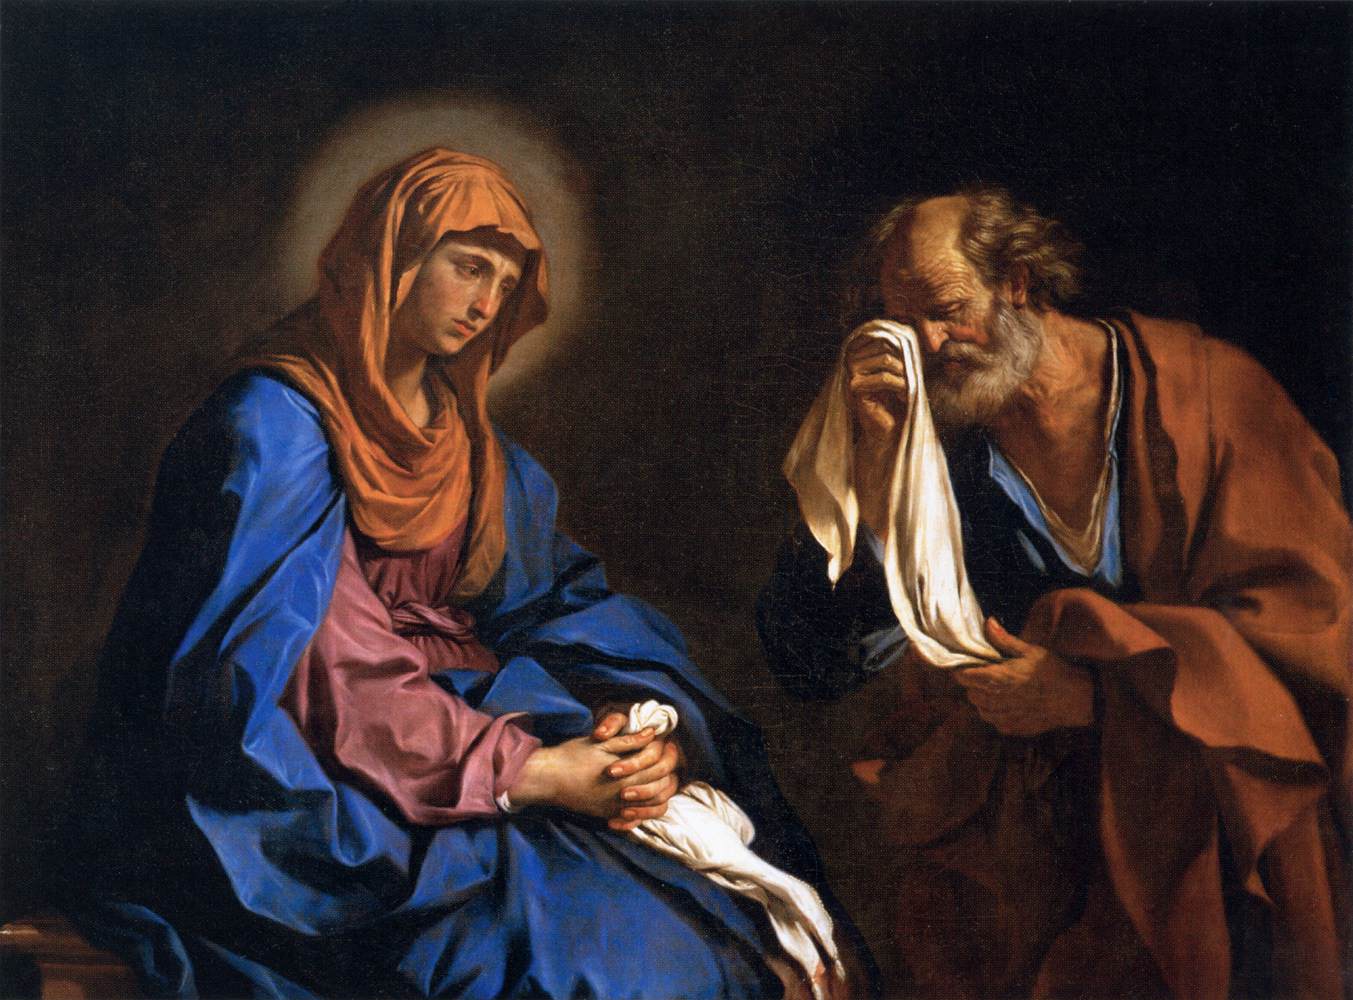 São Pedro chorando diante da Virgem